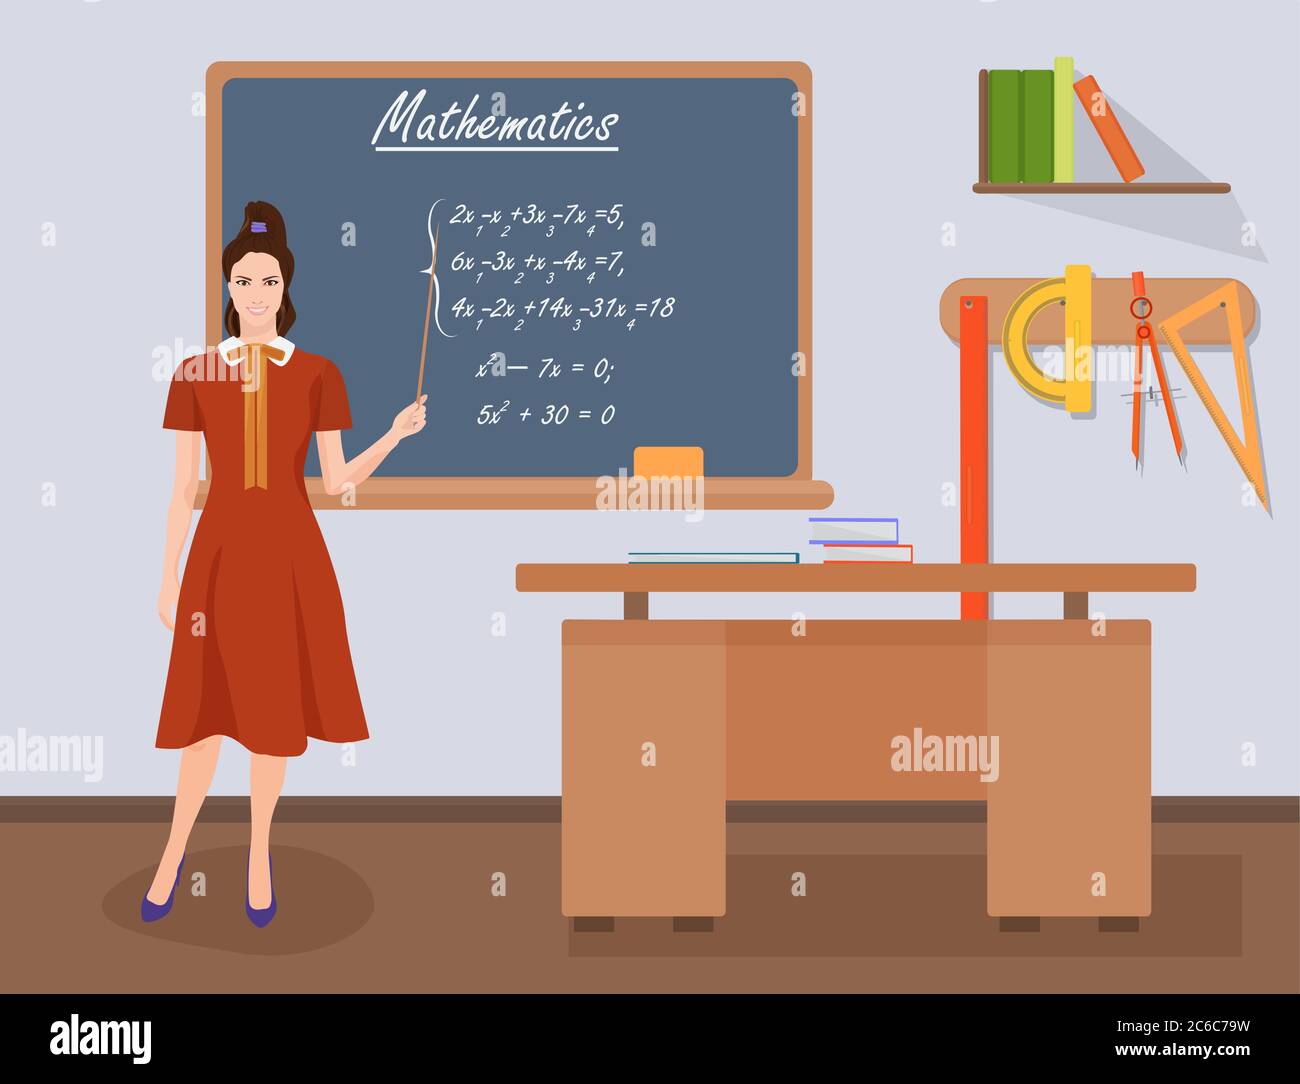 Schule Mathematik weibliche Lehrerin in Publikum Klasse Konzept. Schüler und Lehrer Wissenschaft und Bildung Wissen Vektor Illustration Stock Vektor